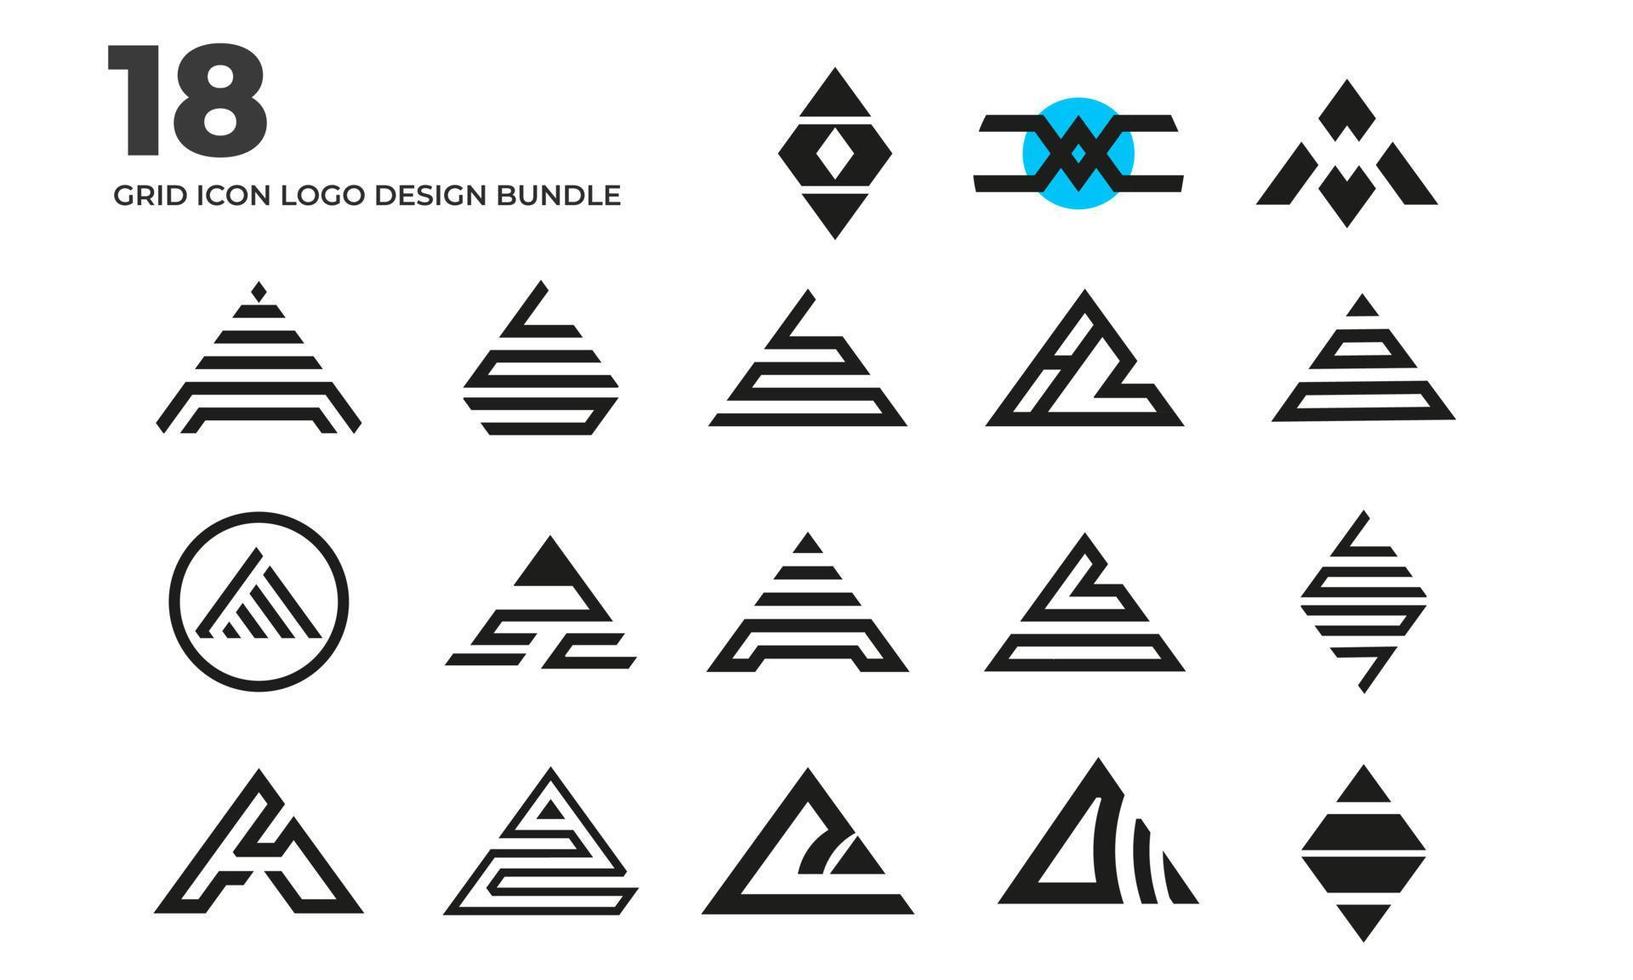 a grid icon logo design template bundles vector